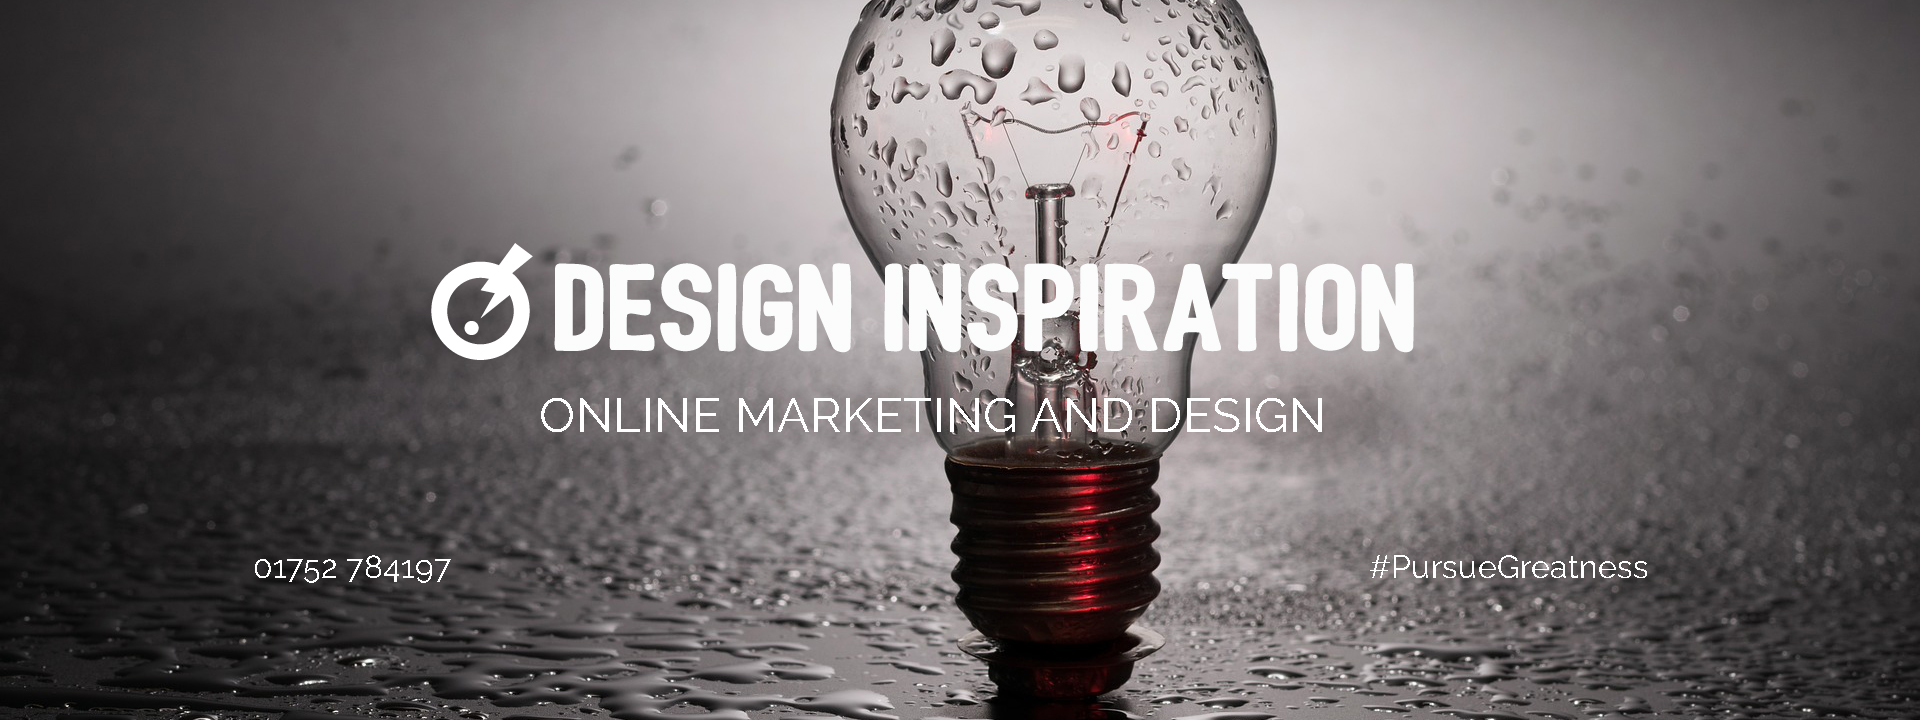 Design Inspiration - web design, social media marketing - marketing videos